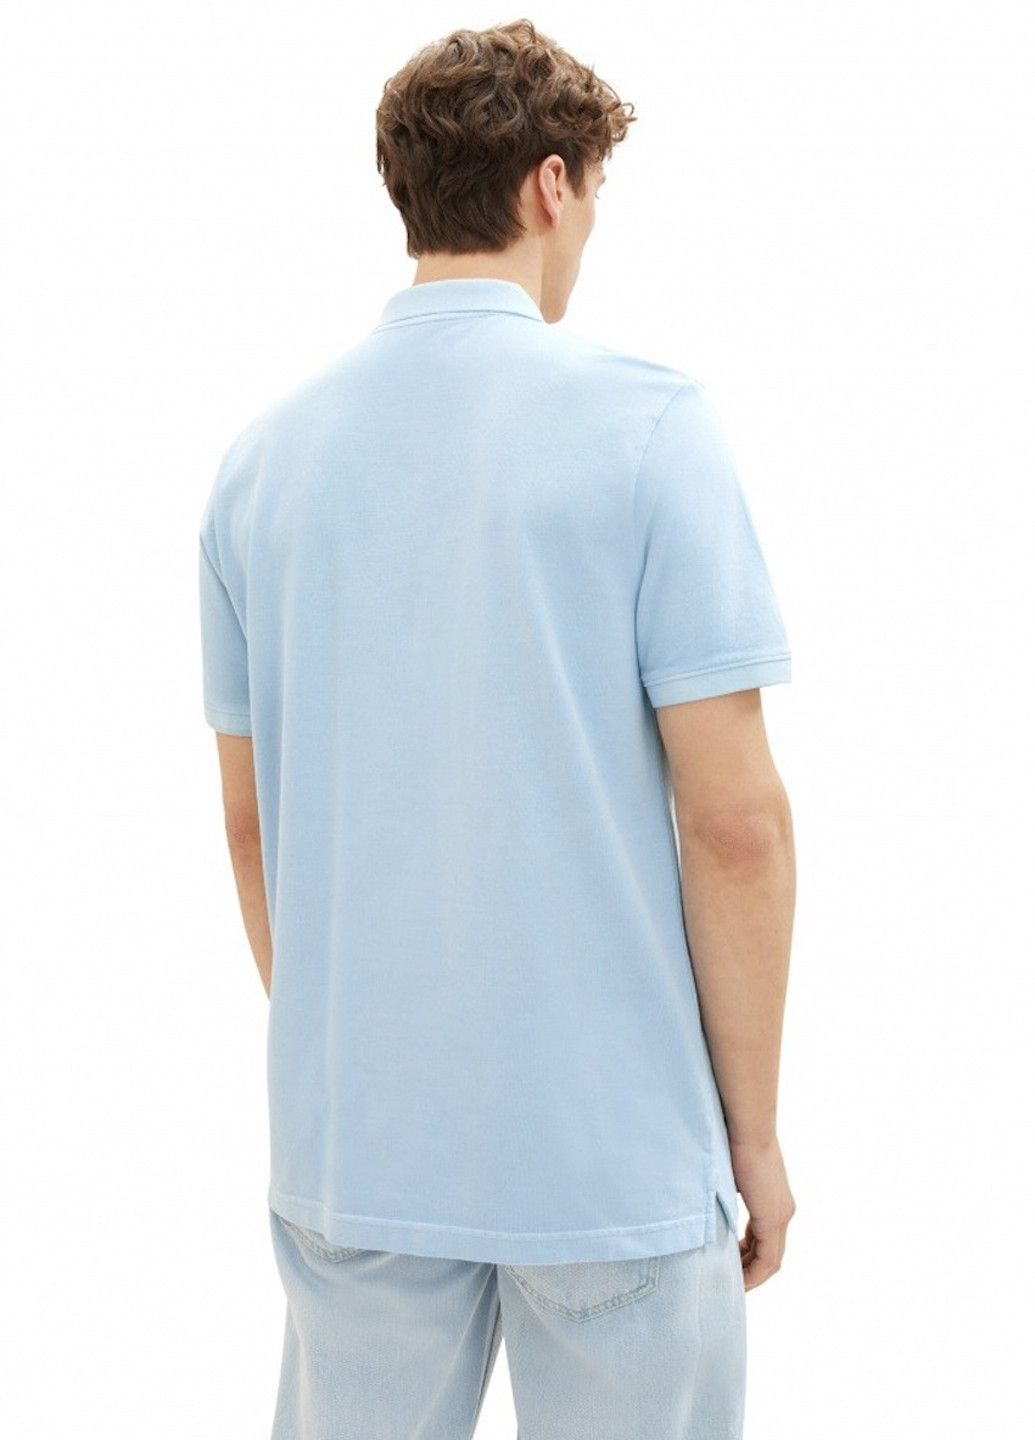 Светло-голубой футболка-поло для мужчин Tom Tailor однотонная